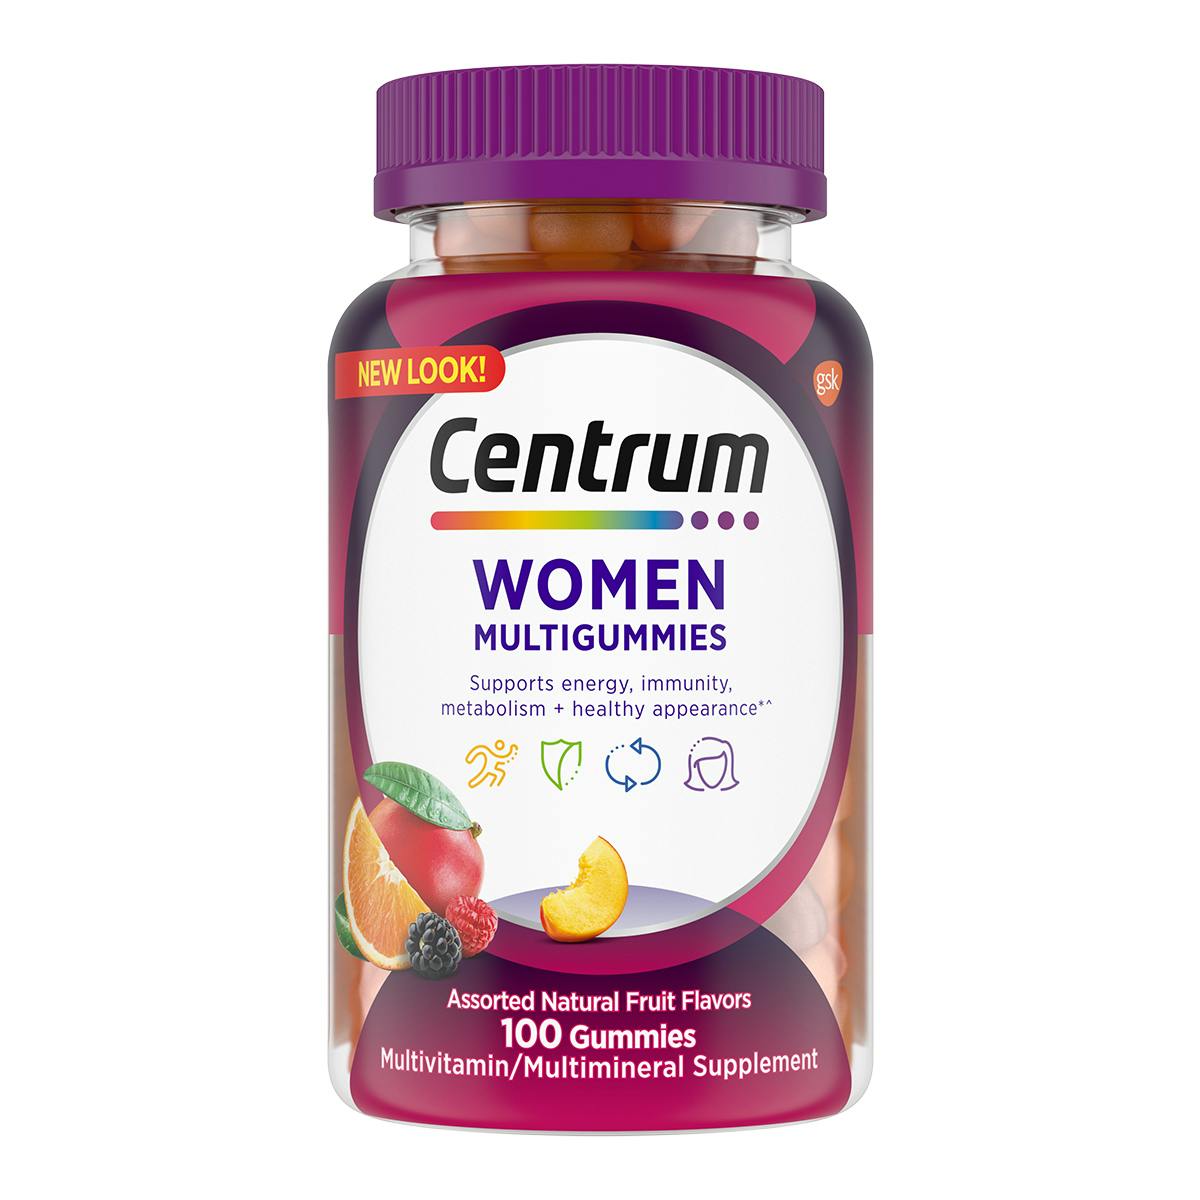 Bottle of Centrum MultiGummies Women vitamins